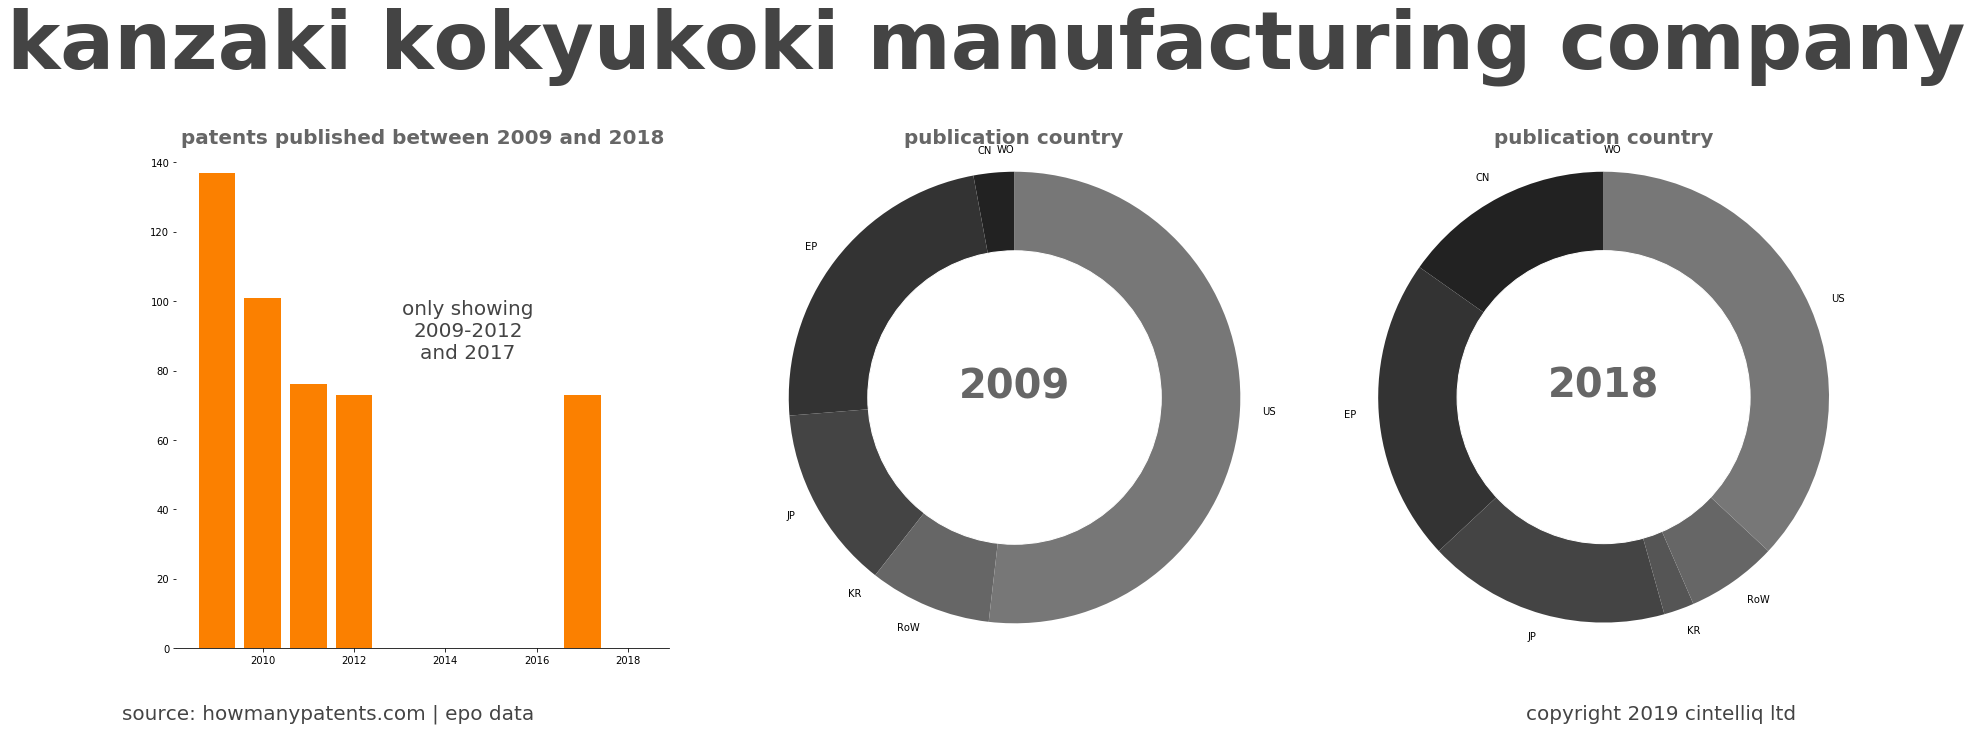 summary of patents for Kanzaki Kokyukoki Manufacturing Company